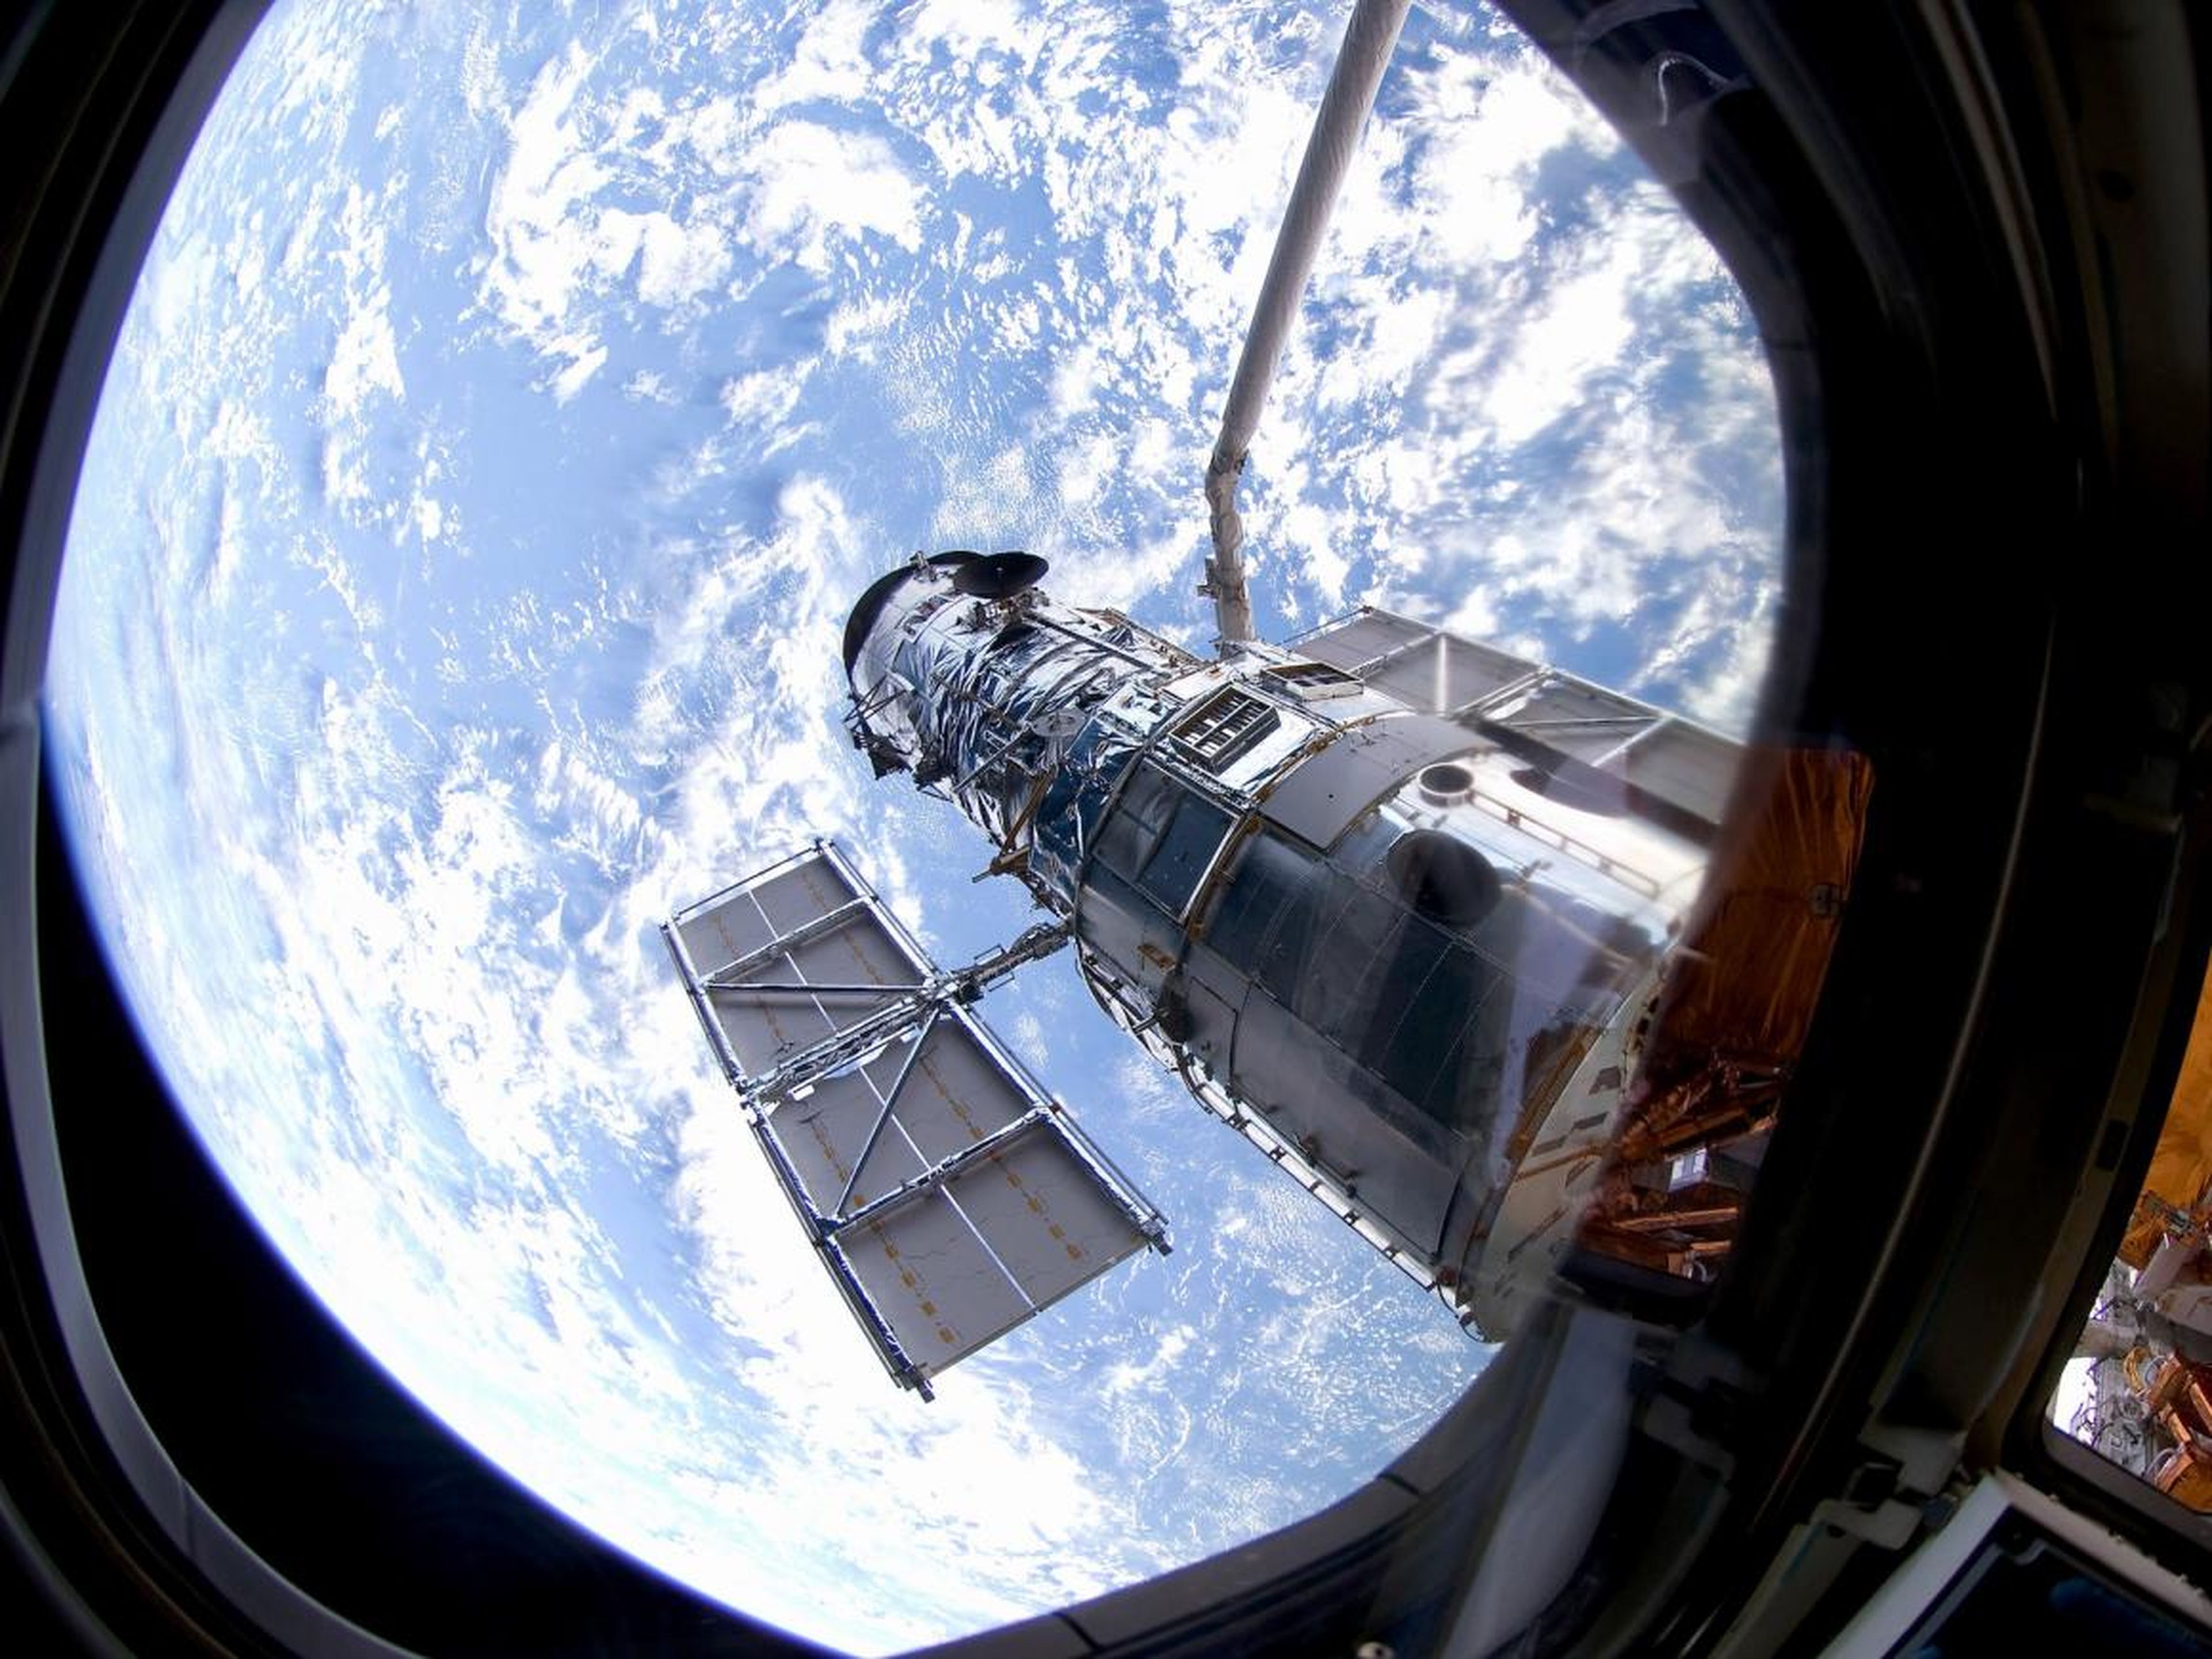 El telescopio Hubble orbitando alrededor de la Tierra.